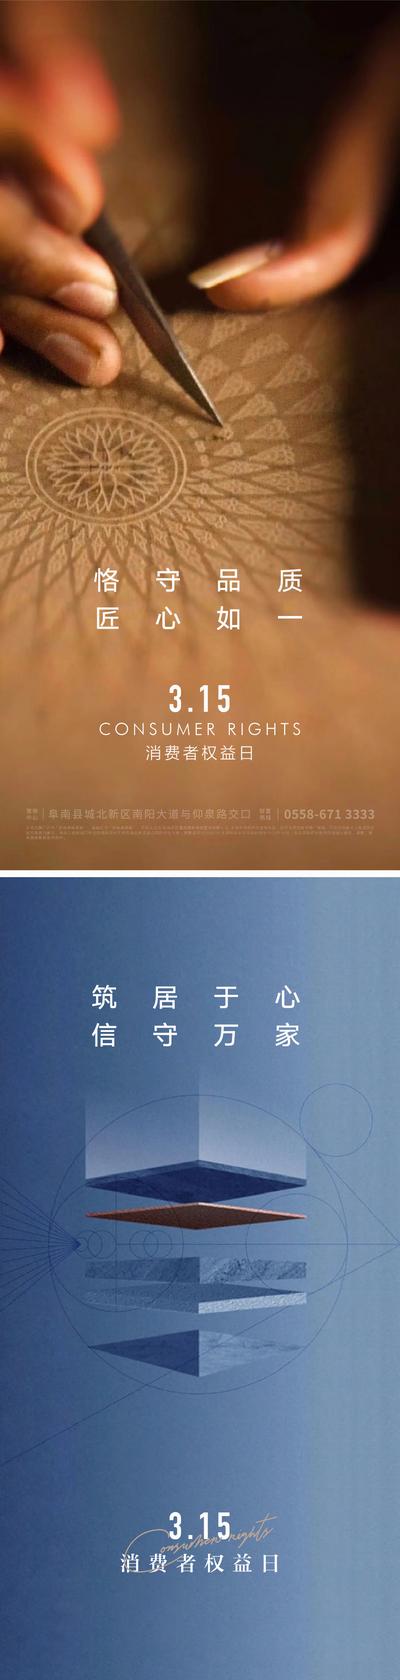 南门网 广告 海报 节日 315 消费者 权益日